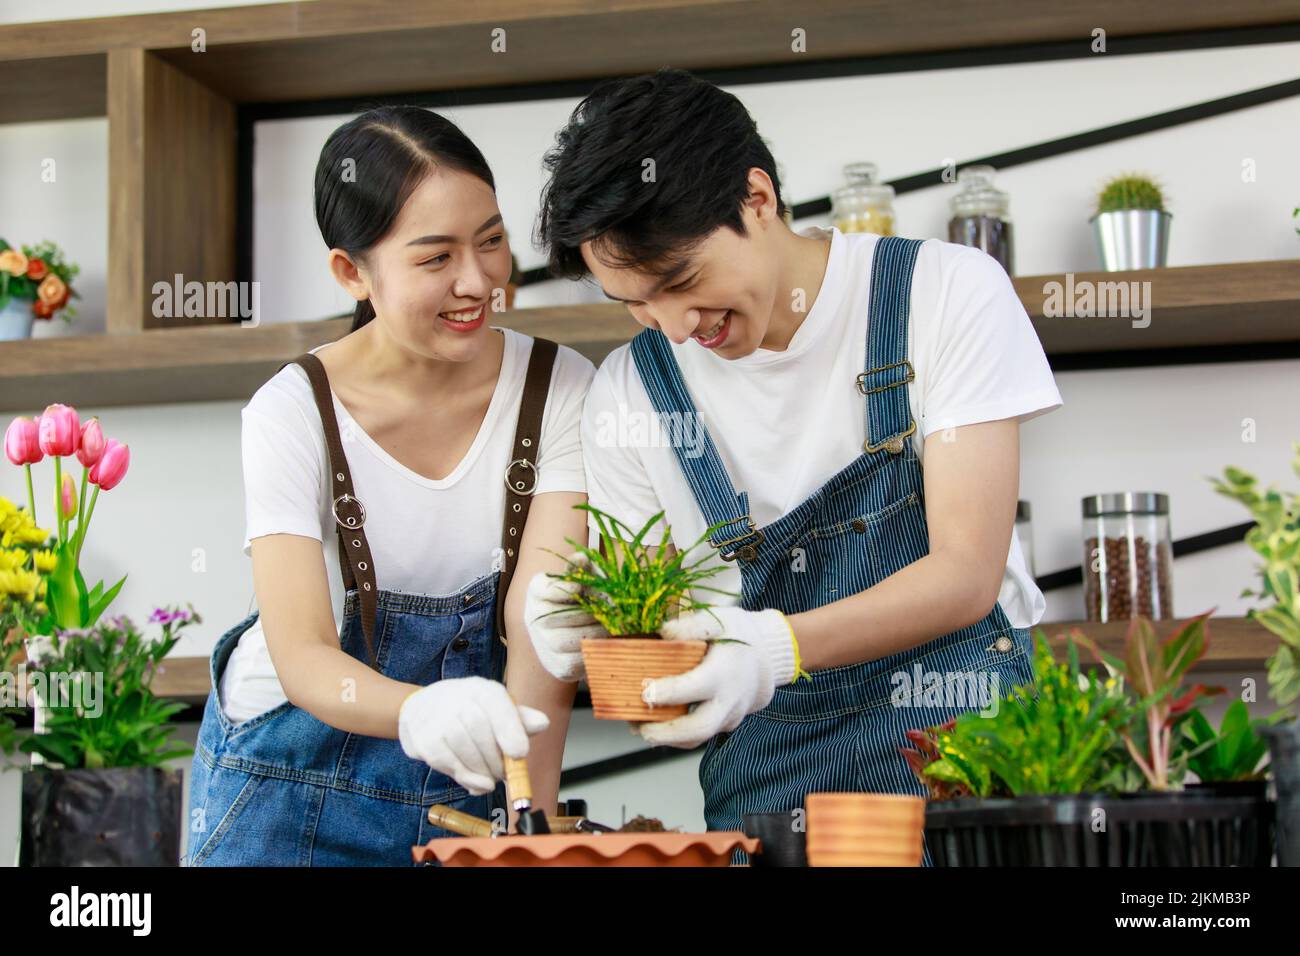 Una pareja del sudeste asiático cuidando las plantas y sonriendo Foto de stock